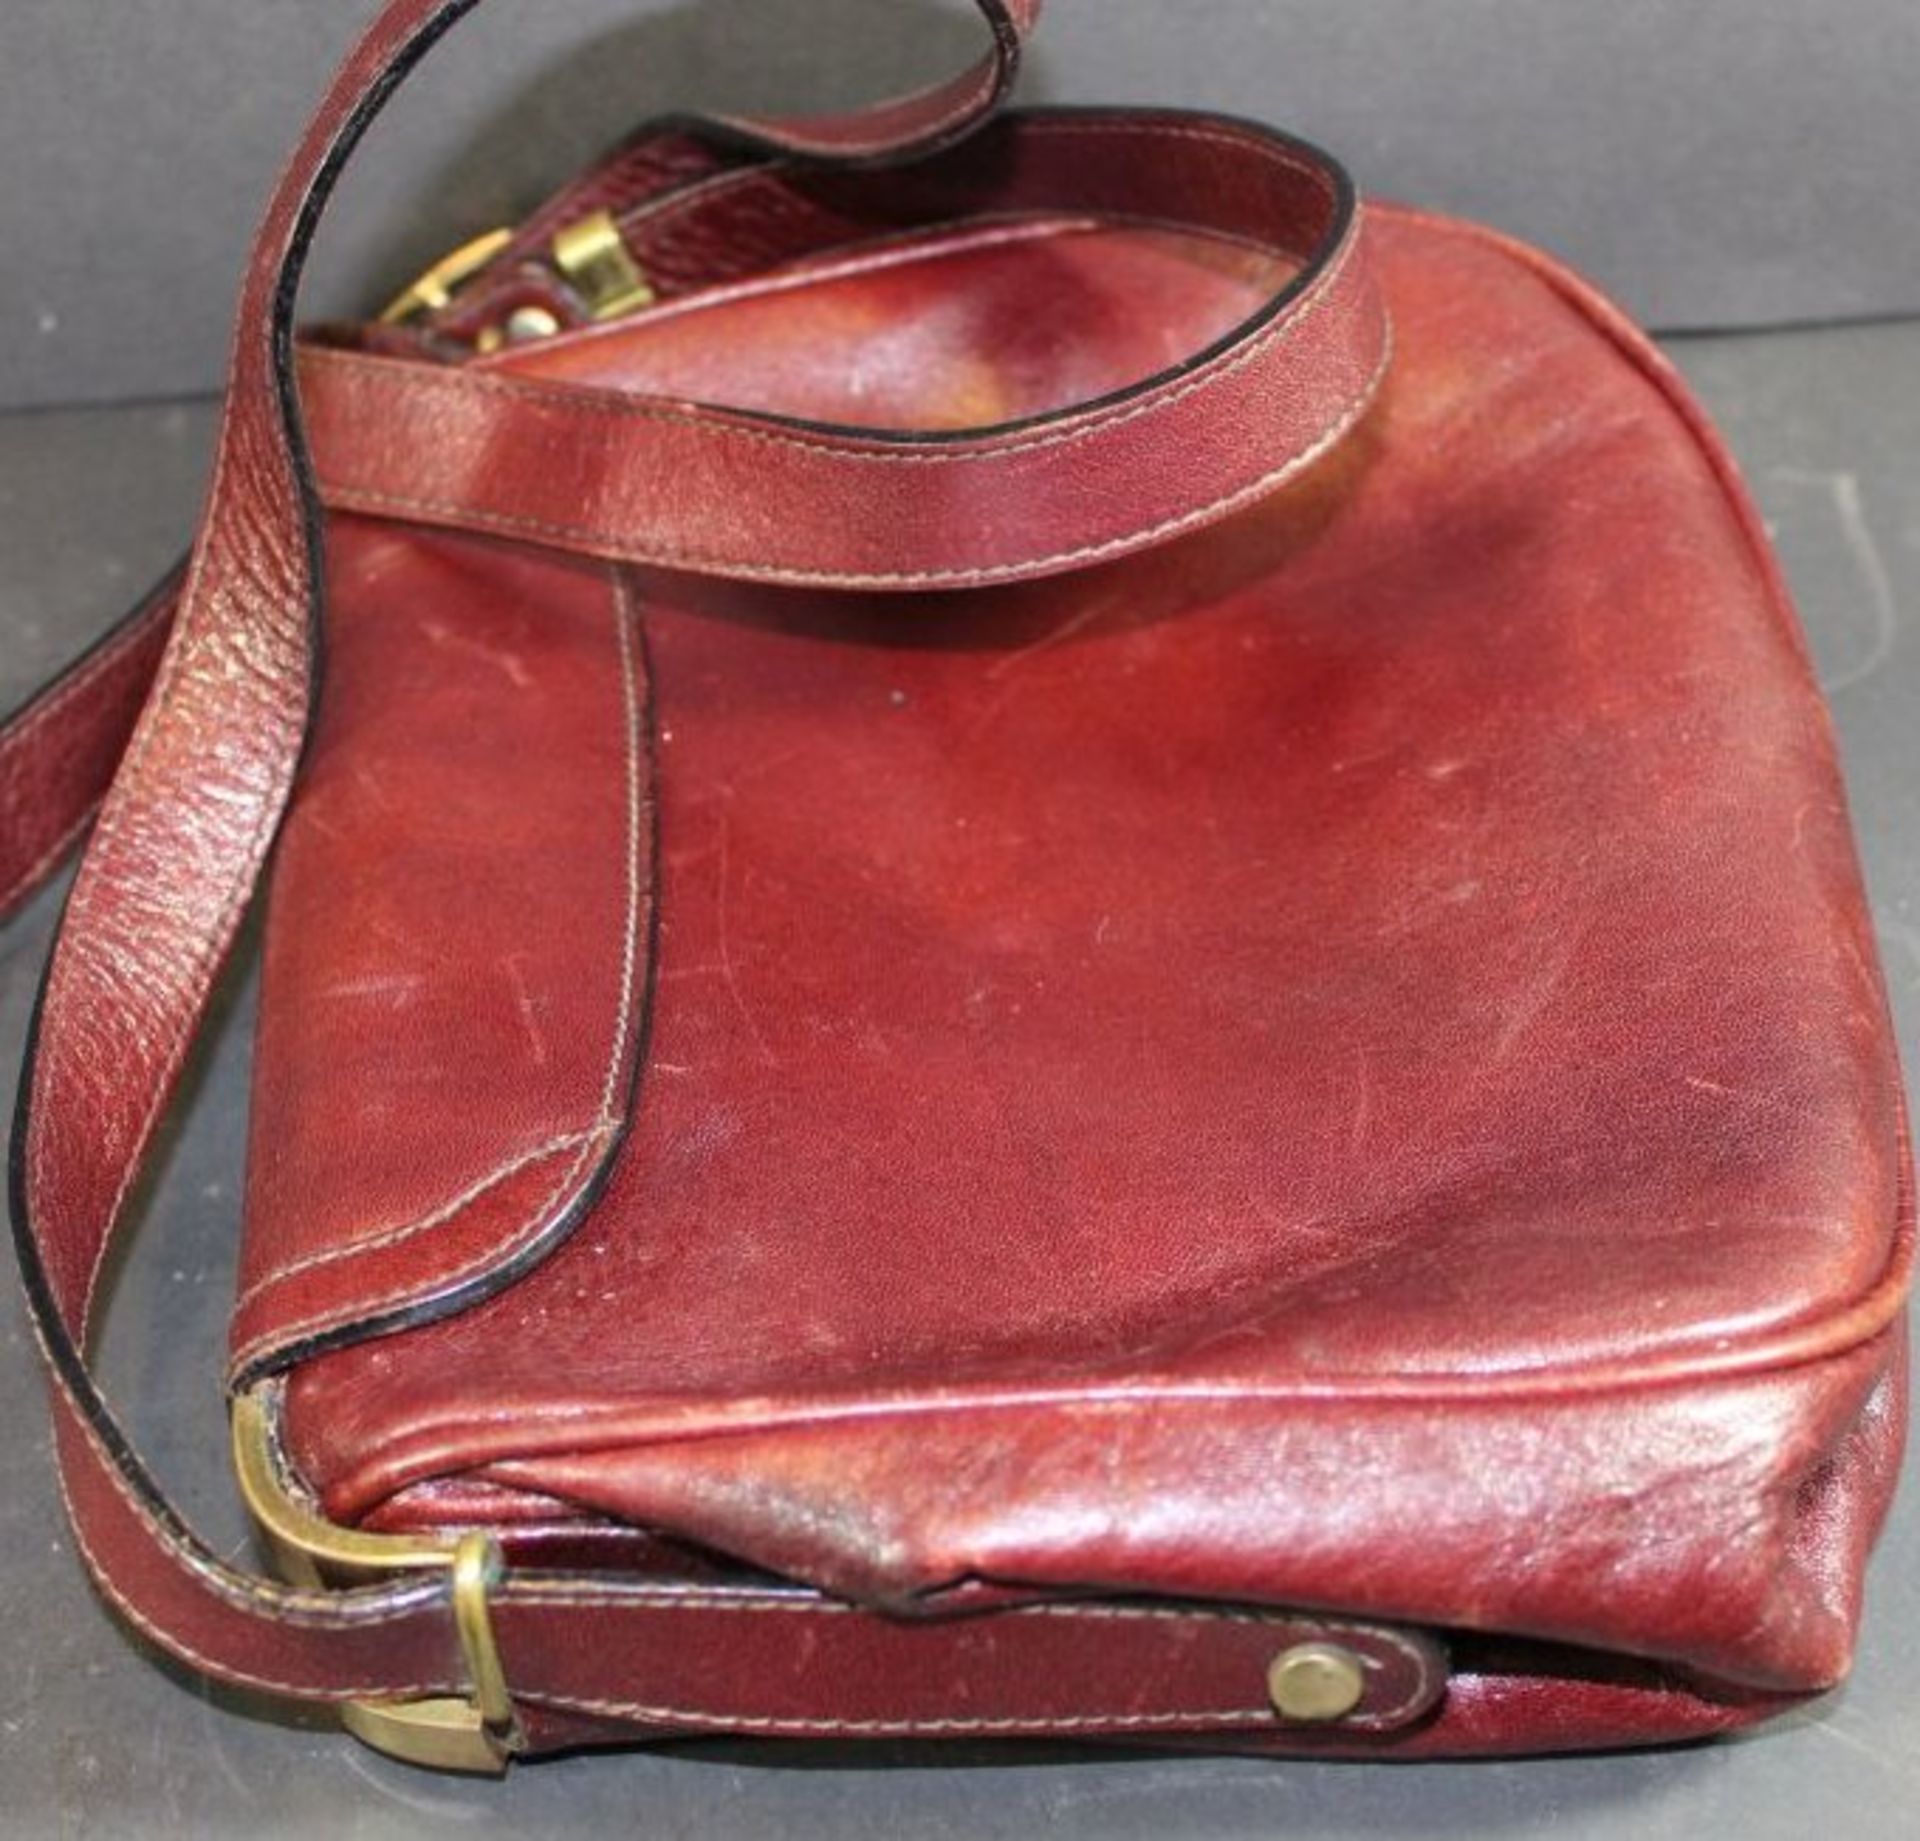 Handtasche "Aigner" Leder, rot, Gebrauchsspuren, 16x20 cm - Bild 2 aus 3